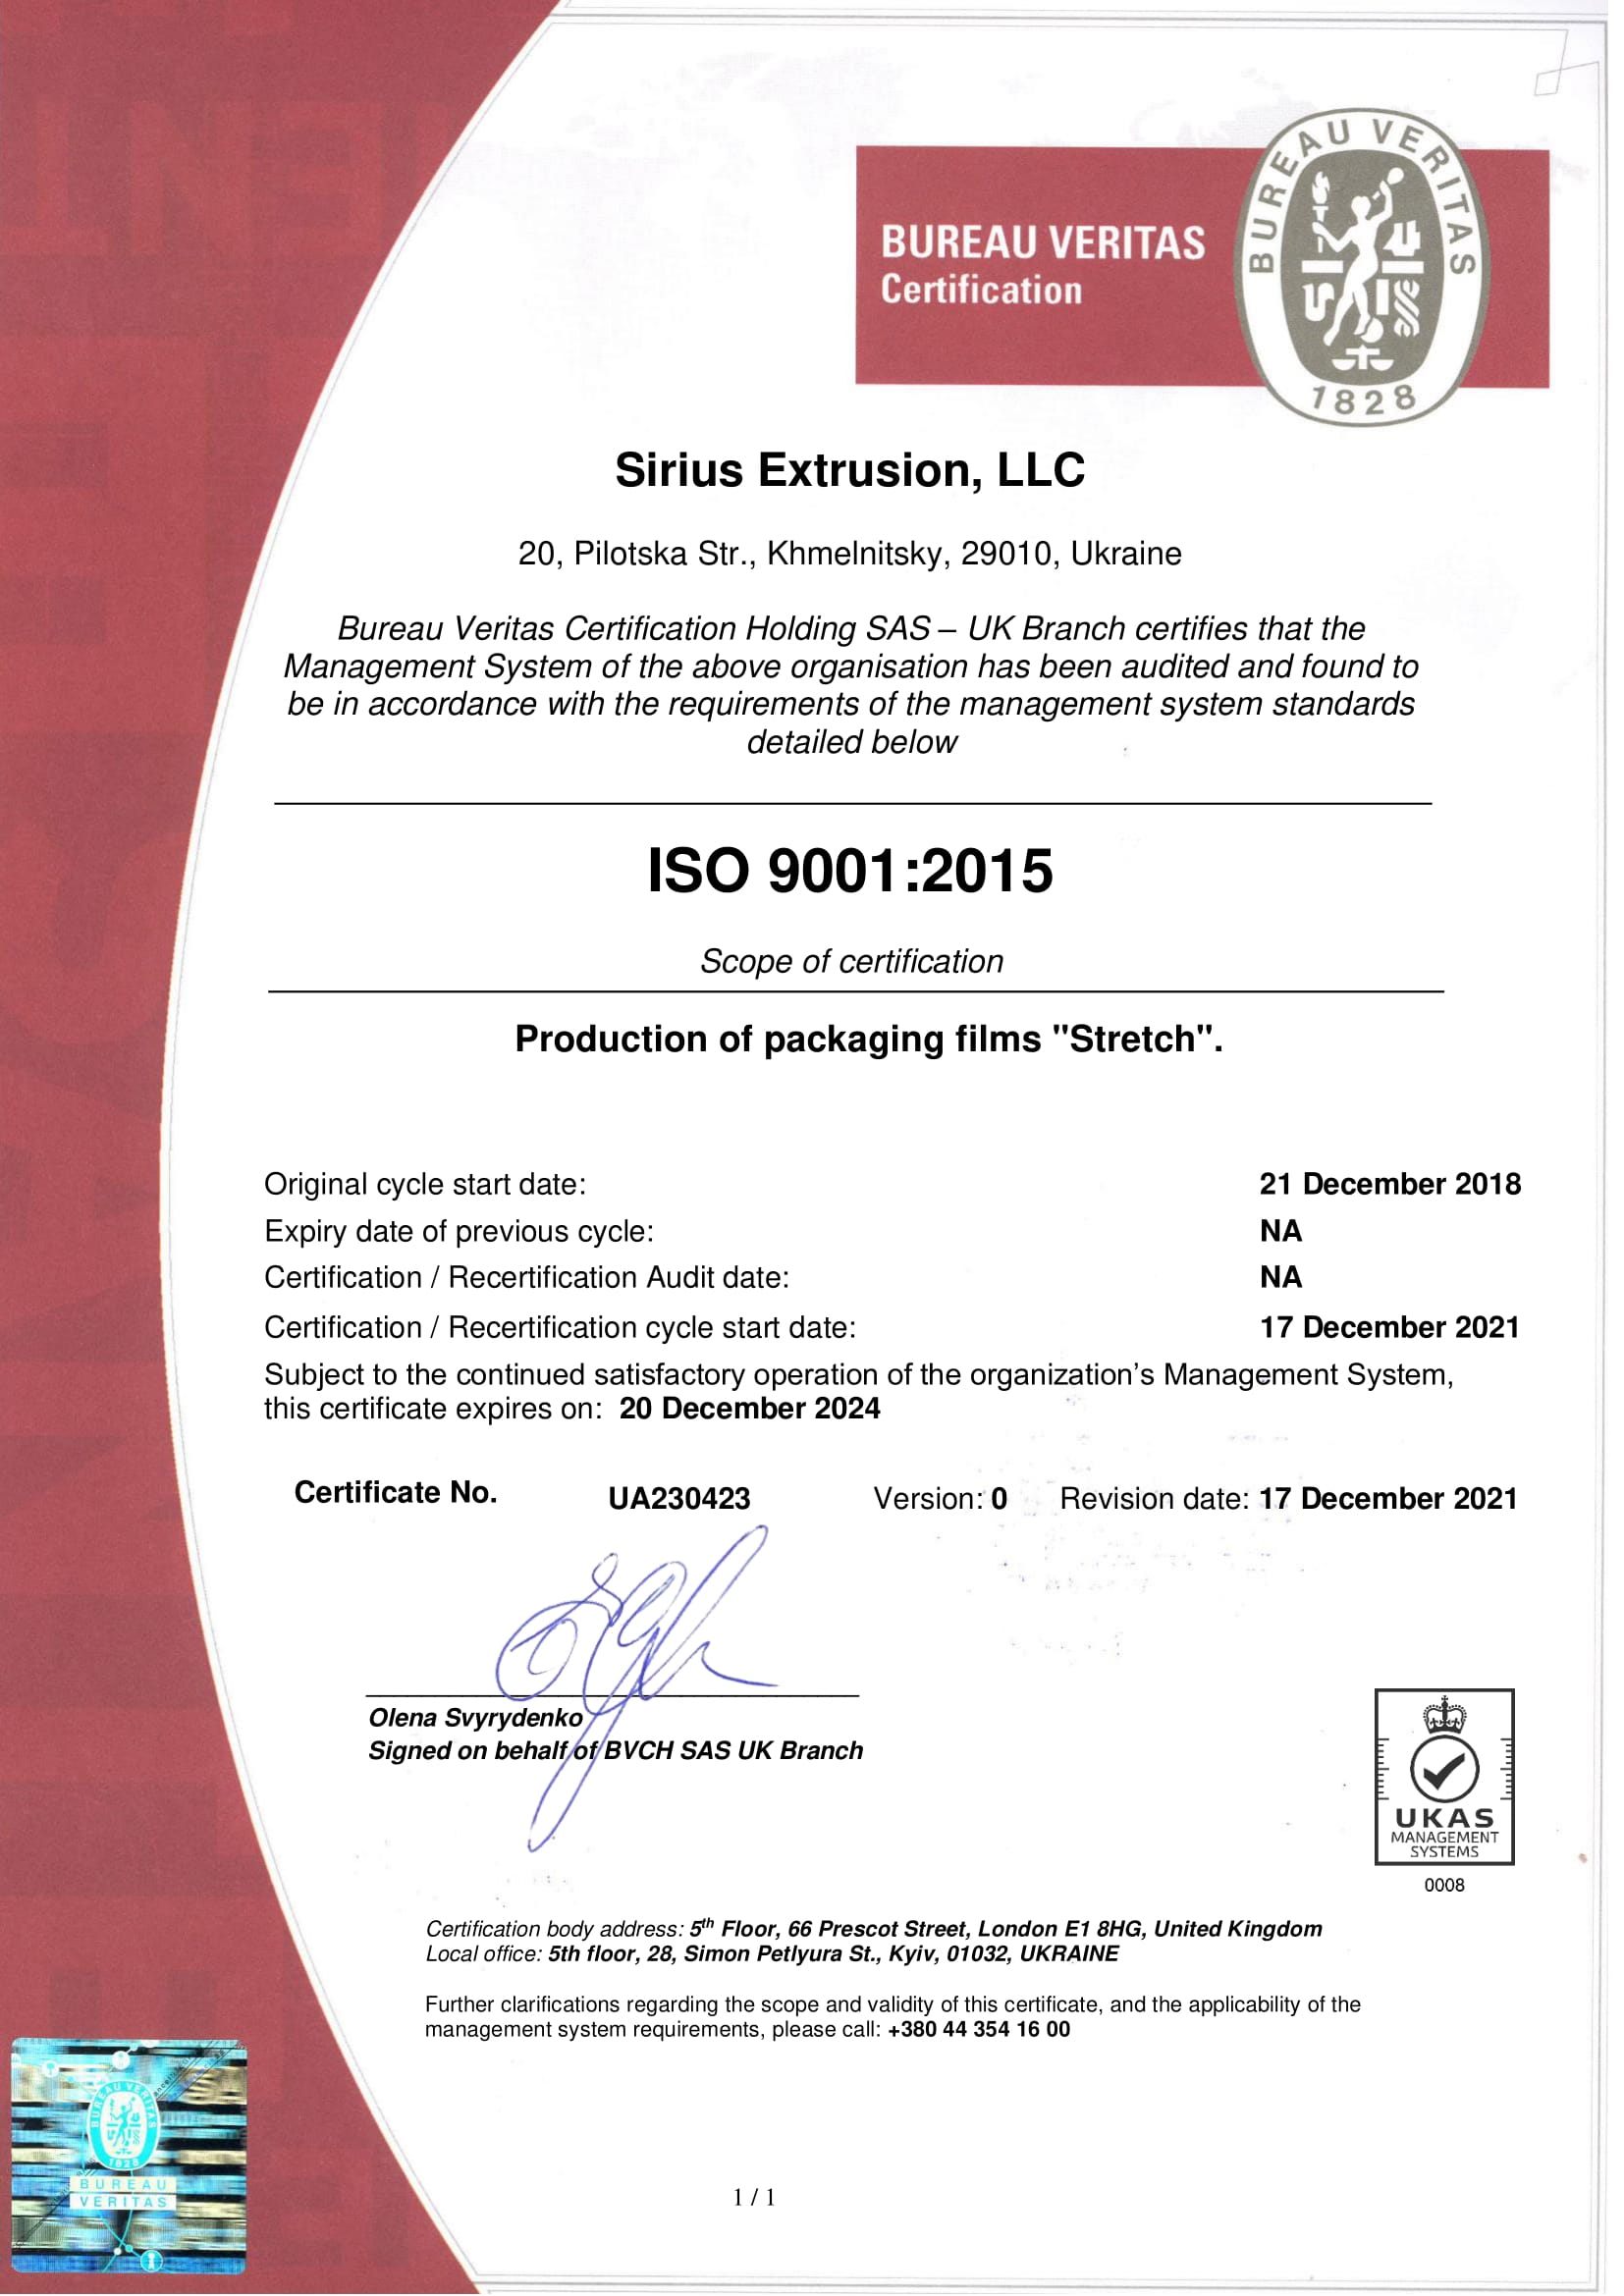 certificate-image-61d417538af45